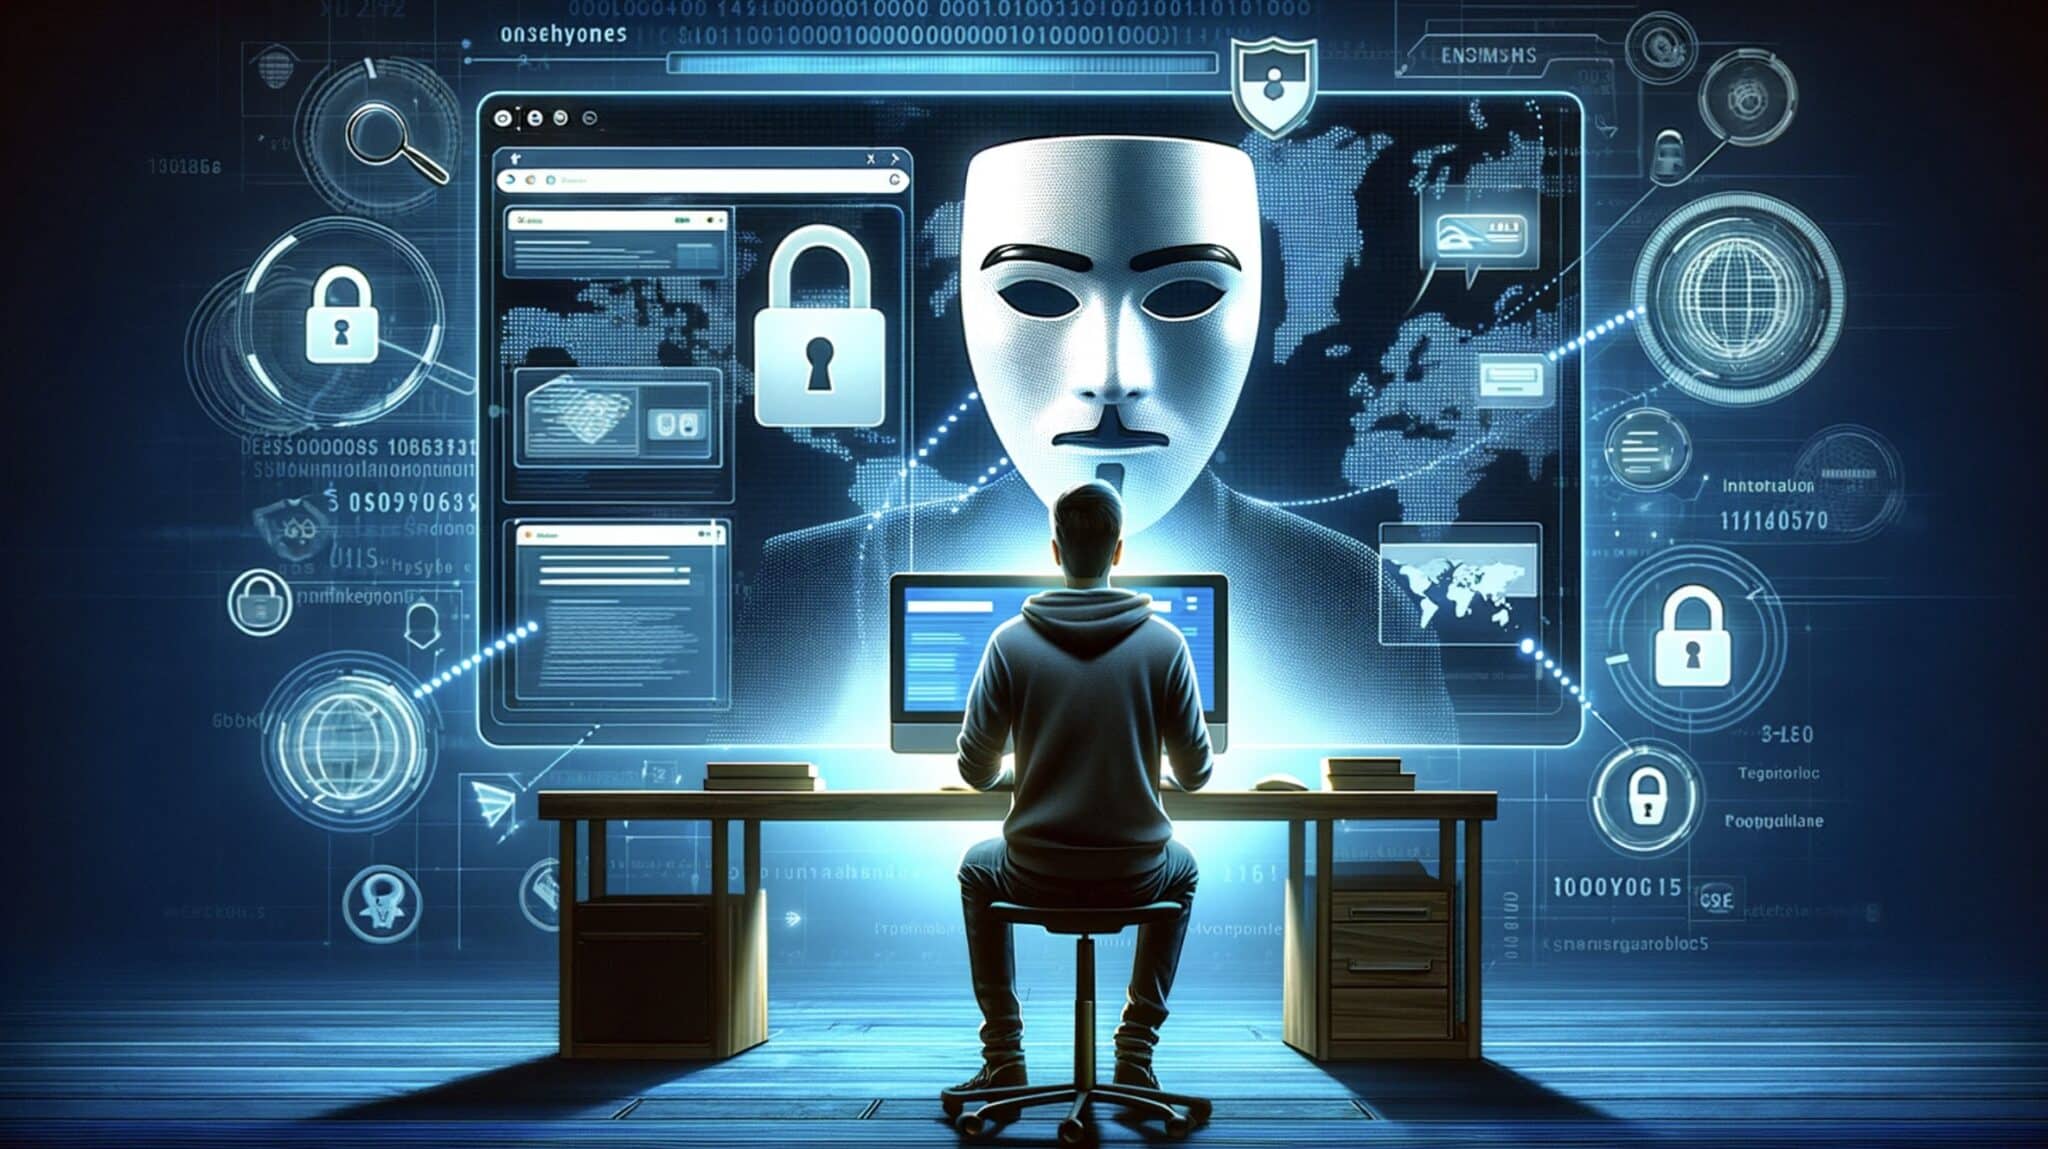 Co je SOCKS5: Odhalení budoucnosti internetové bezpečnosti a anonymity